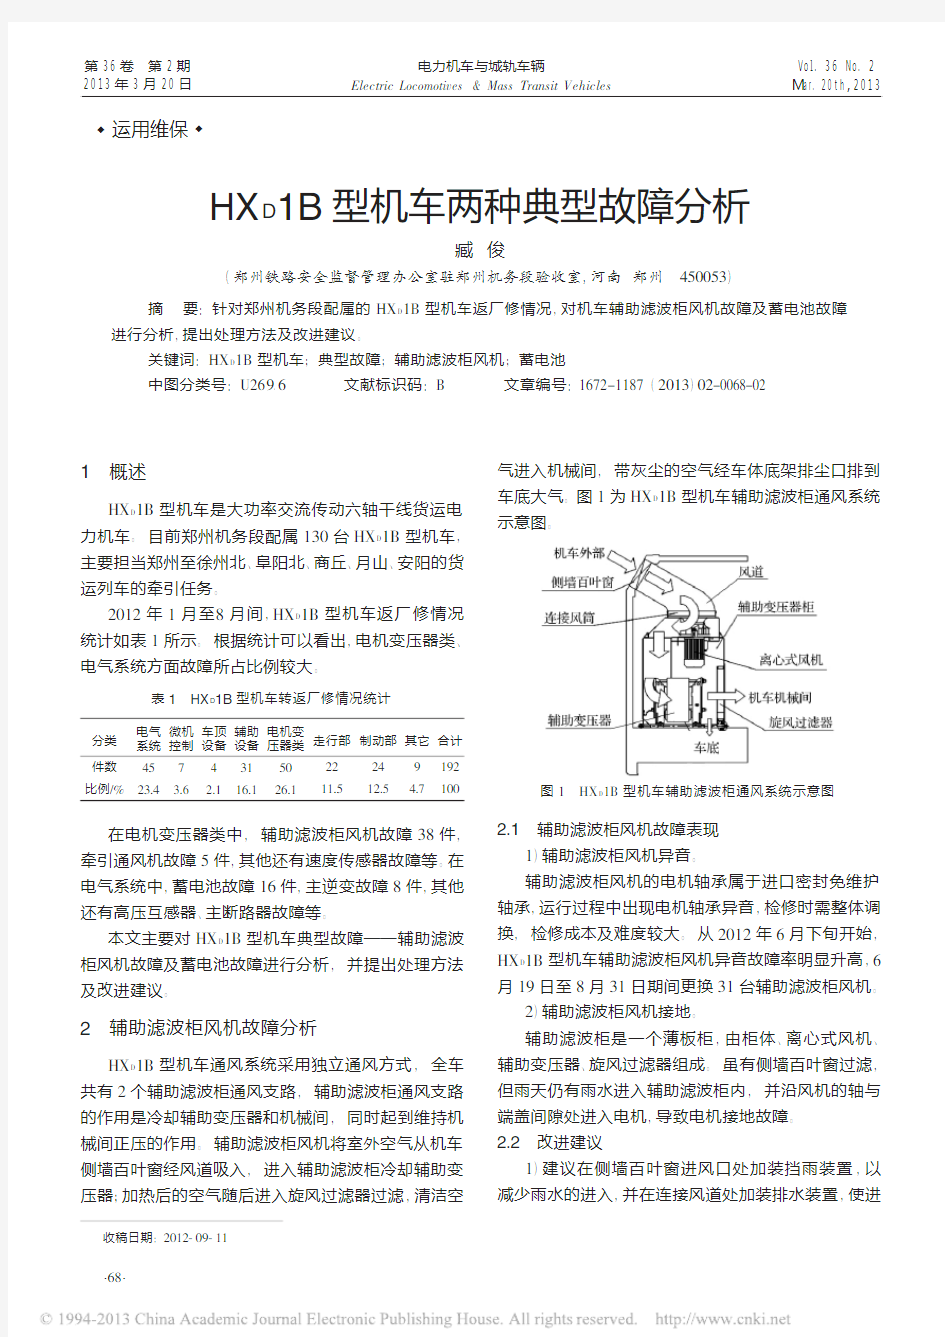 HX_D1B型机车两种典型故障分析_臧俊